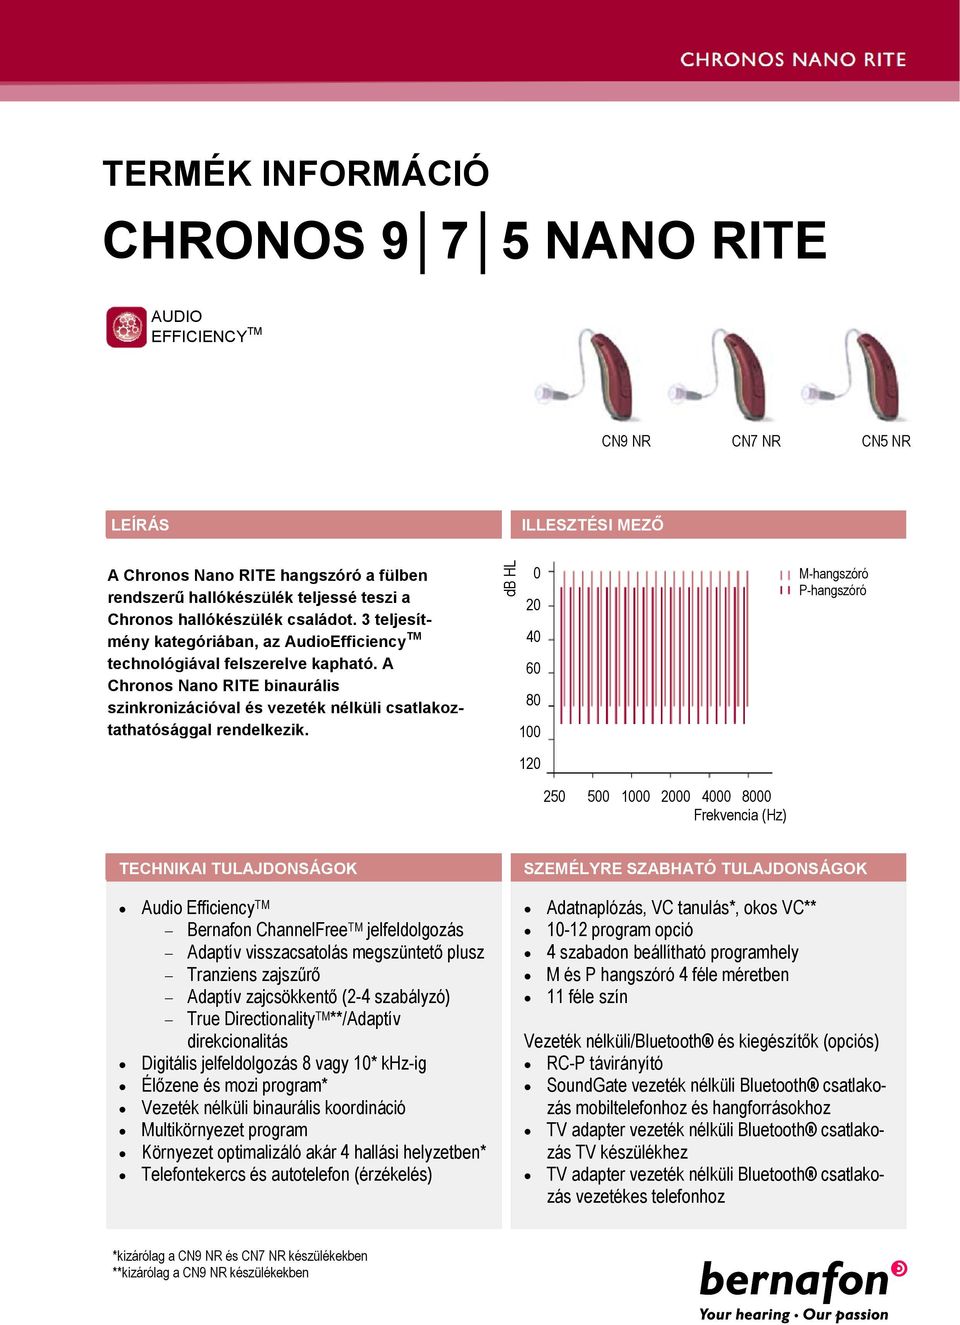 A Chronos Nano RITE binaurális szinkronizációval és vezeték nélküli csatlakoztathatósággal rendelkezik.